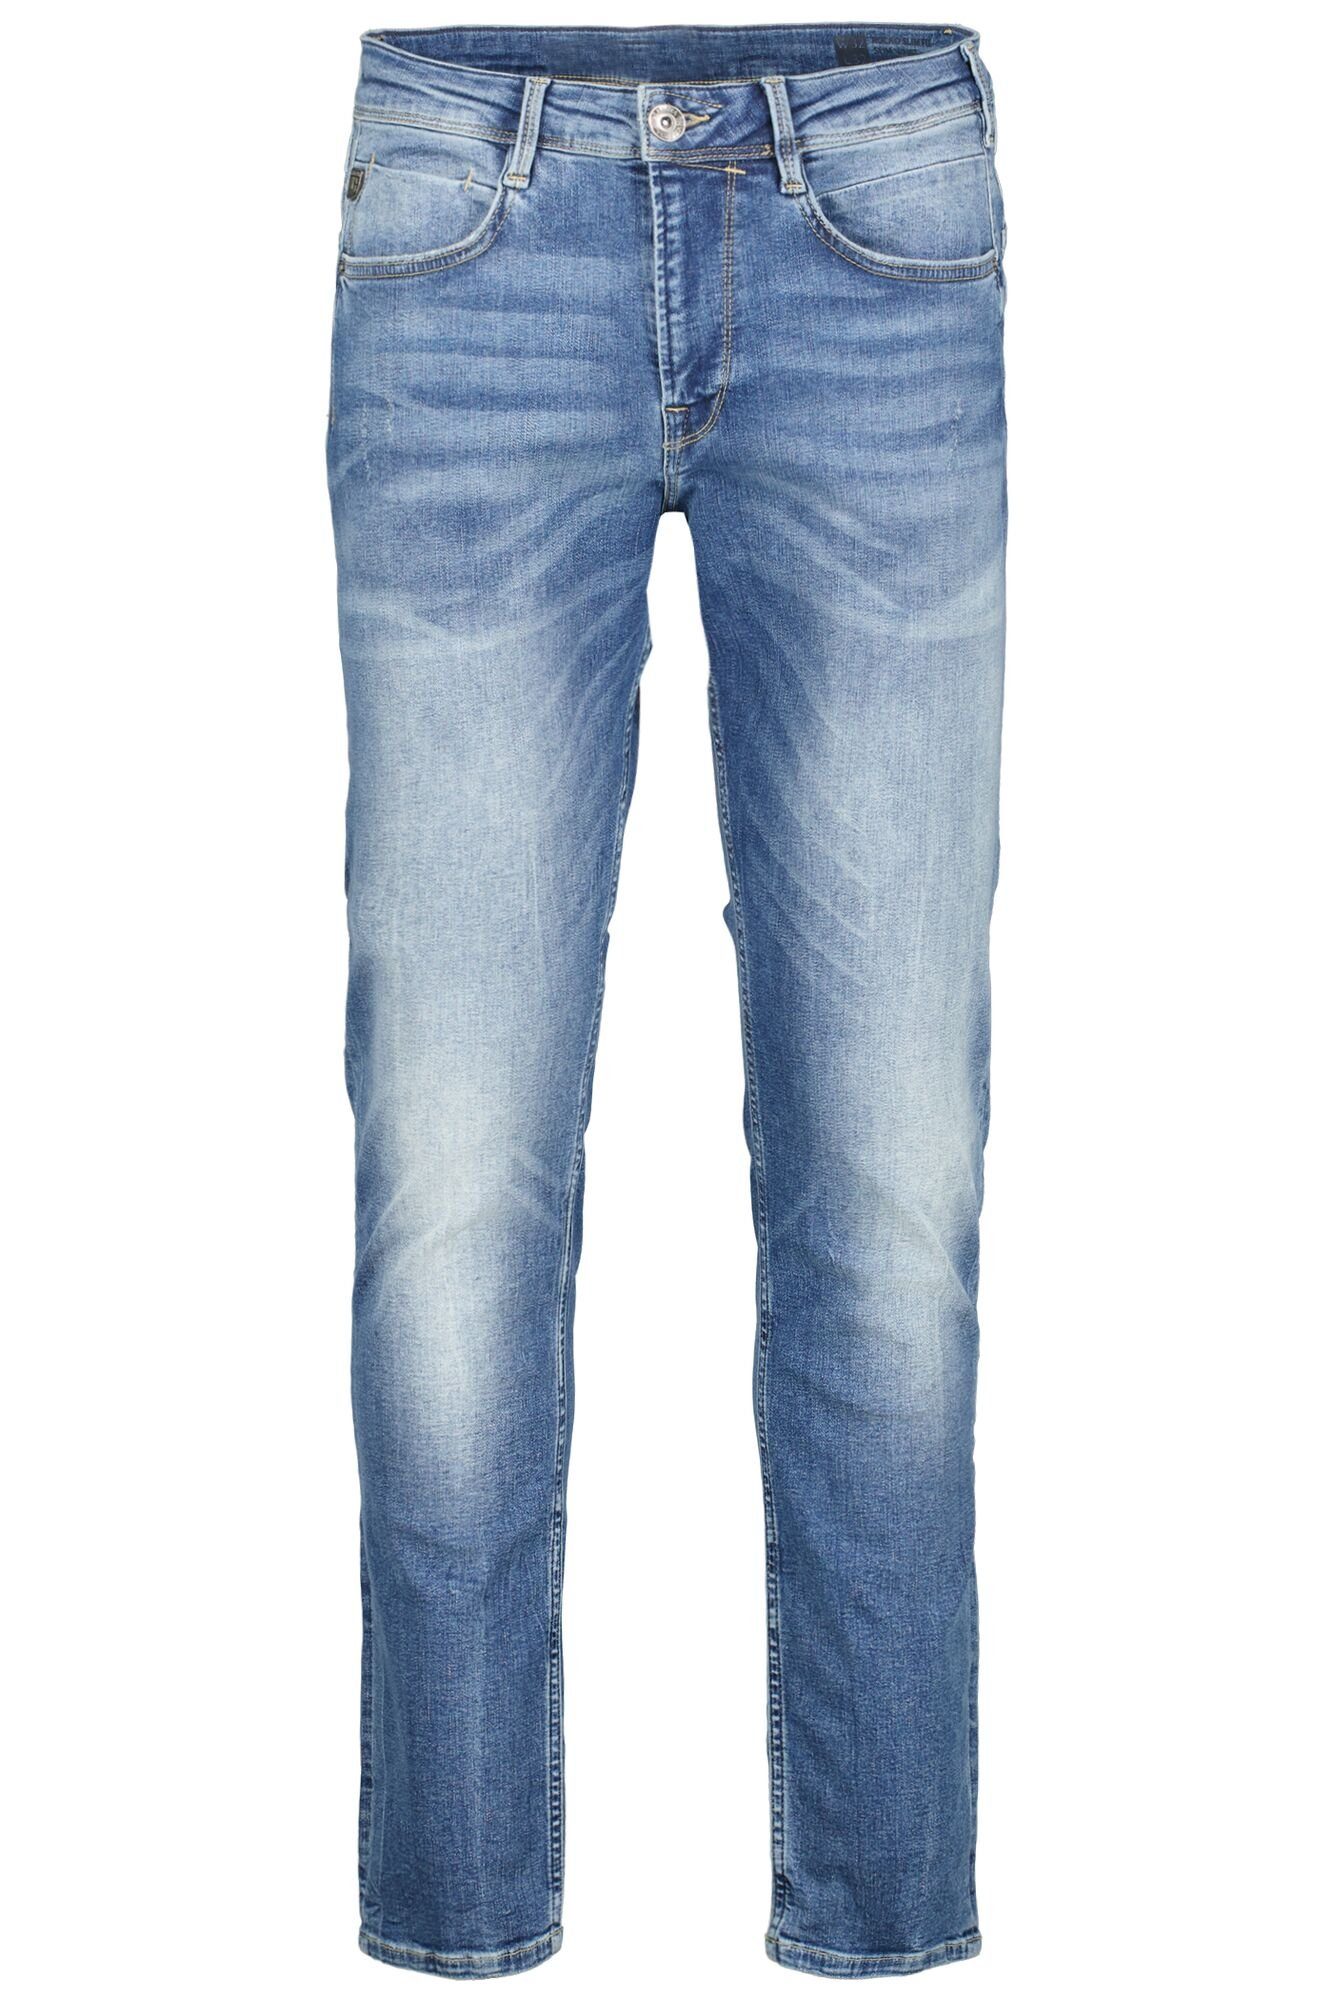 Garcia 5-Pocket-Jeans Waschungen vintage used in blue verschiedenen Rocko